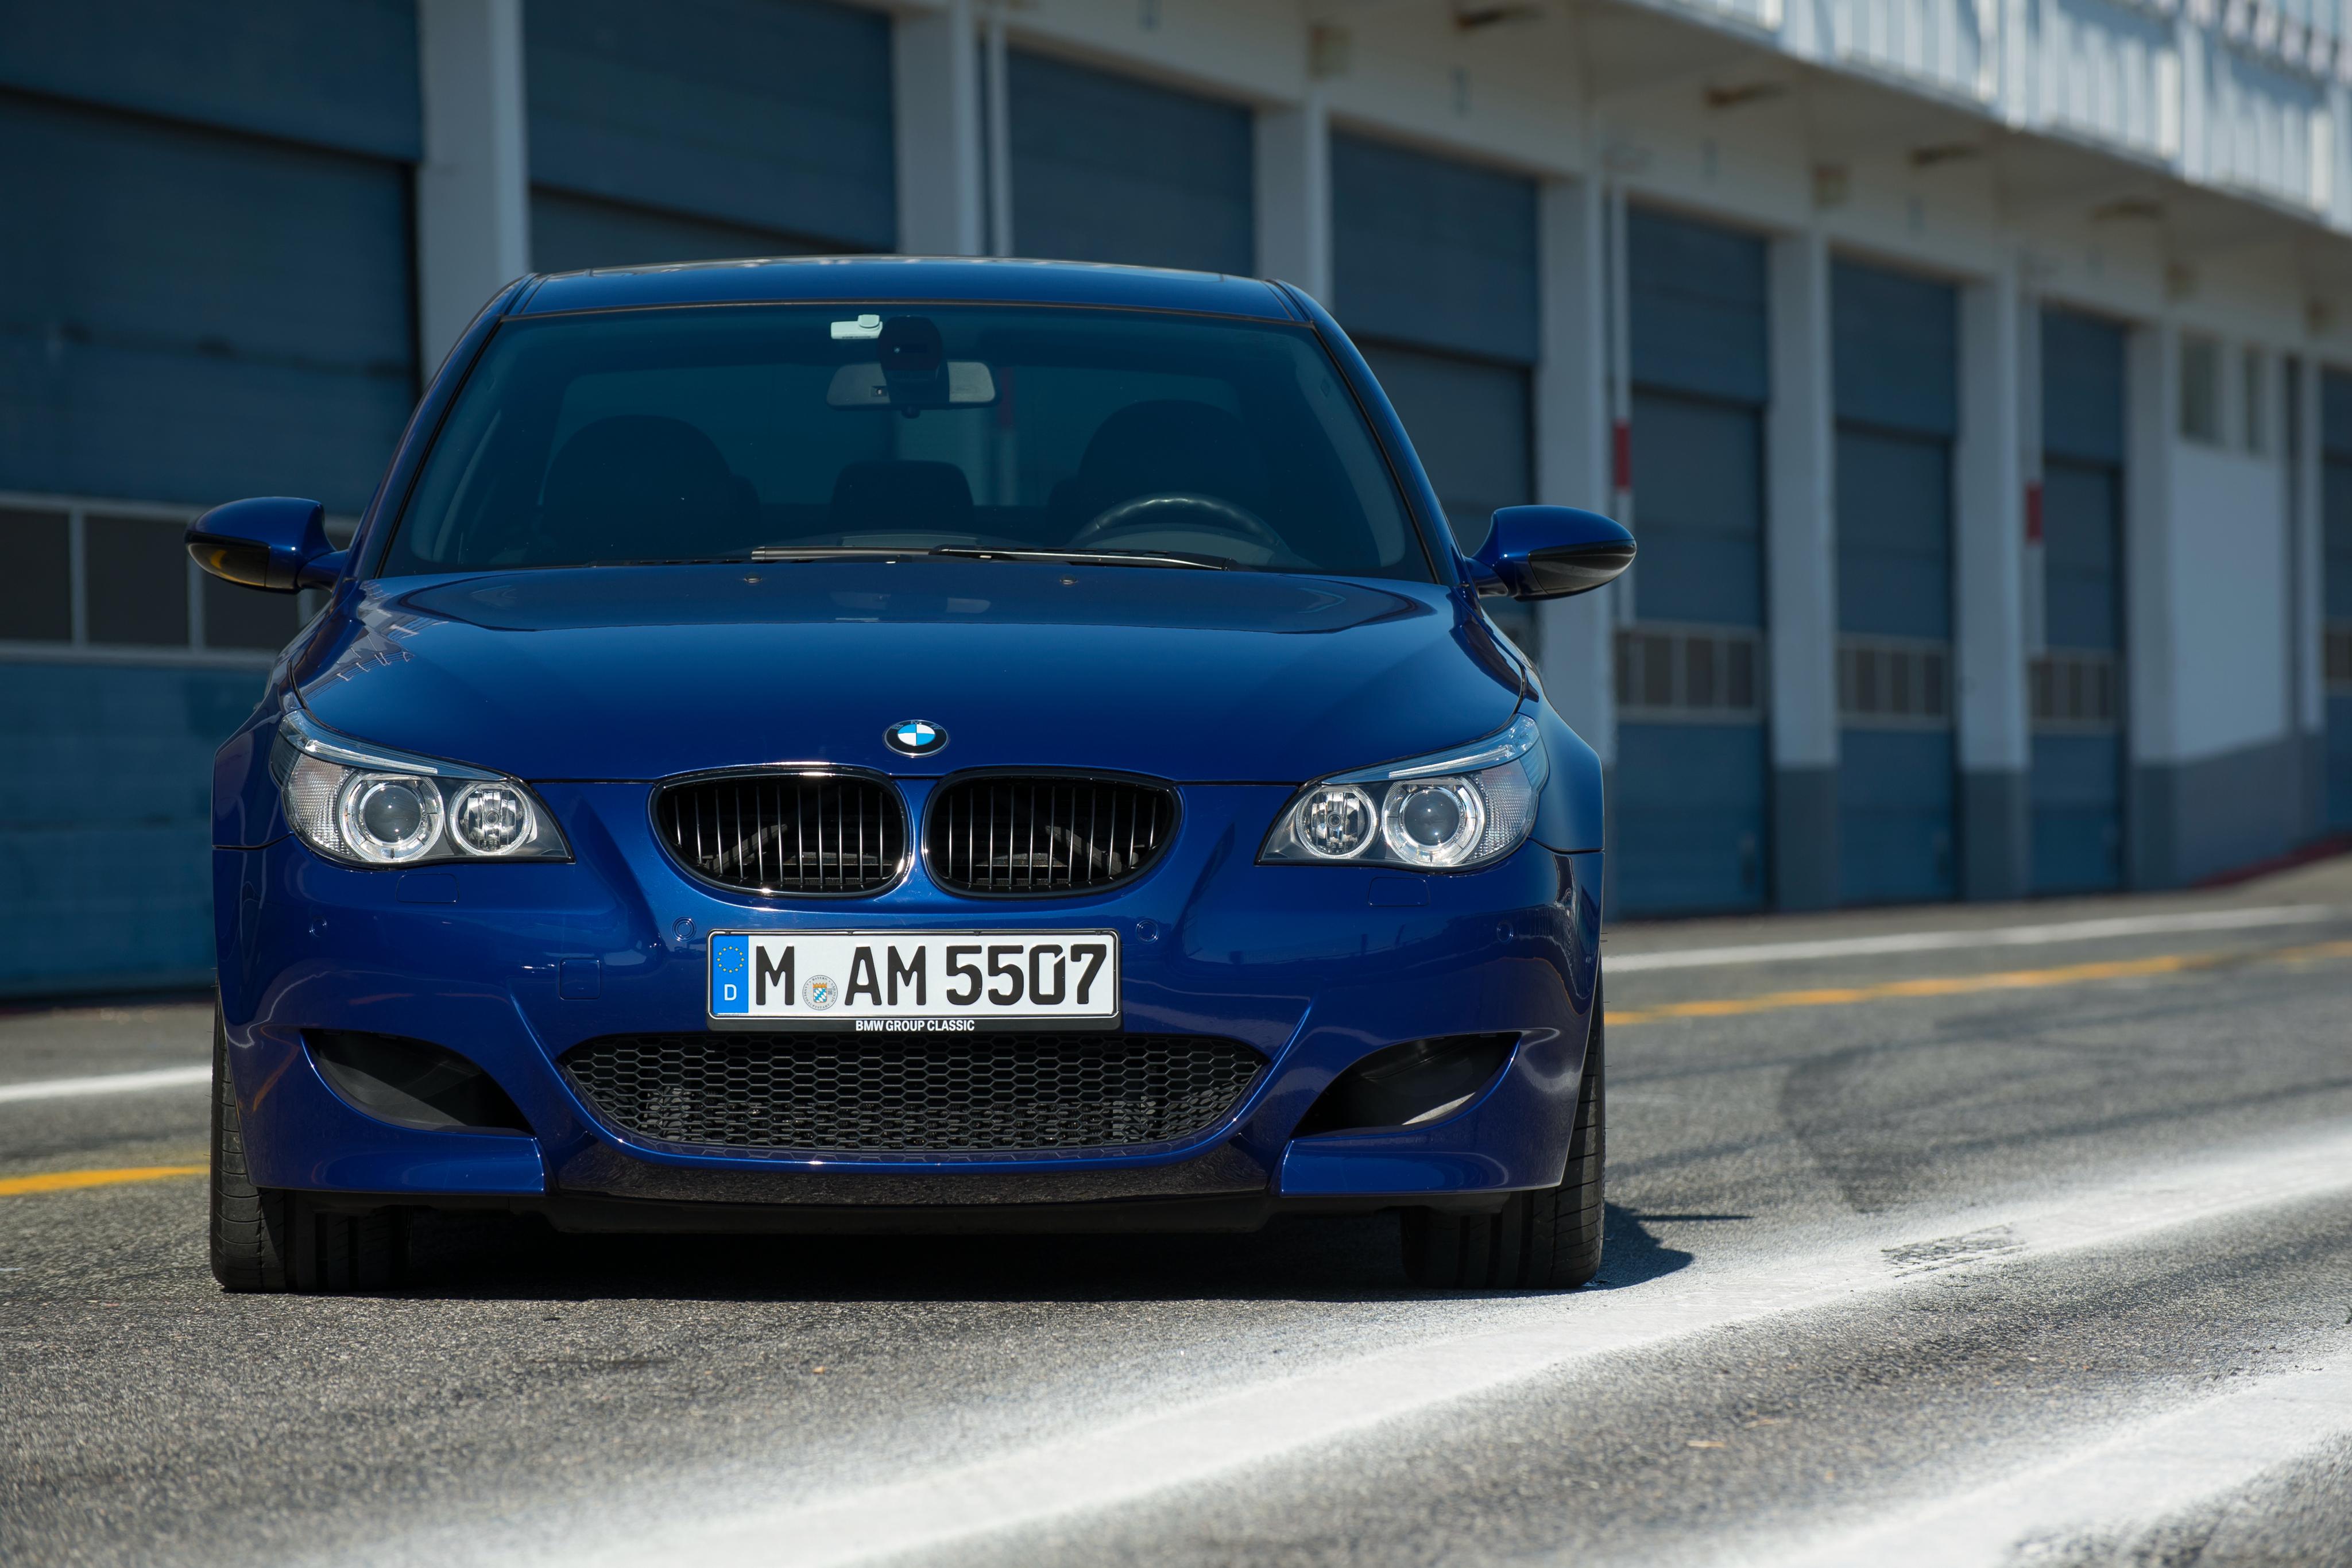 Bmw m 5 m 60. BMW m5 e60. BMW 5 e60 m5. BMW m5 e60/61. BMW m5 e60 синяя.